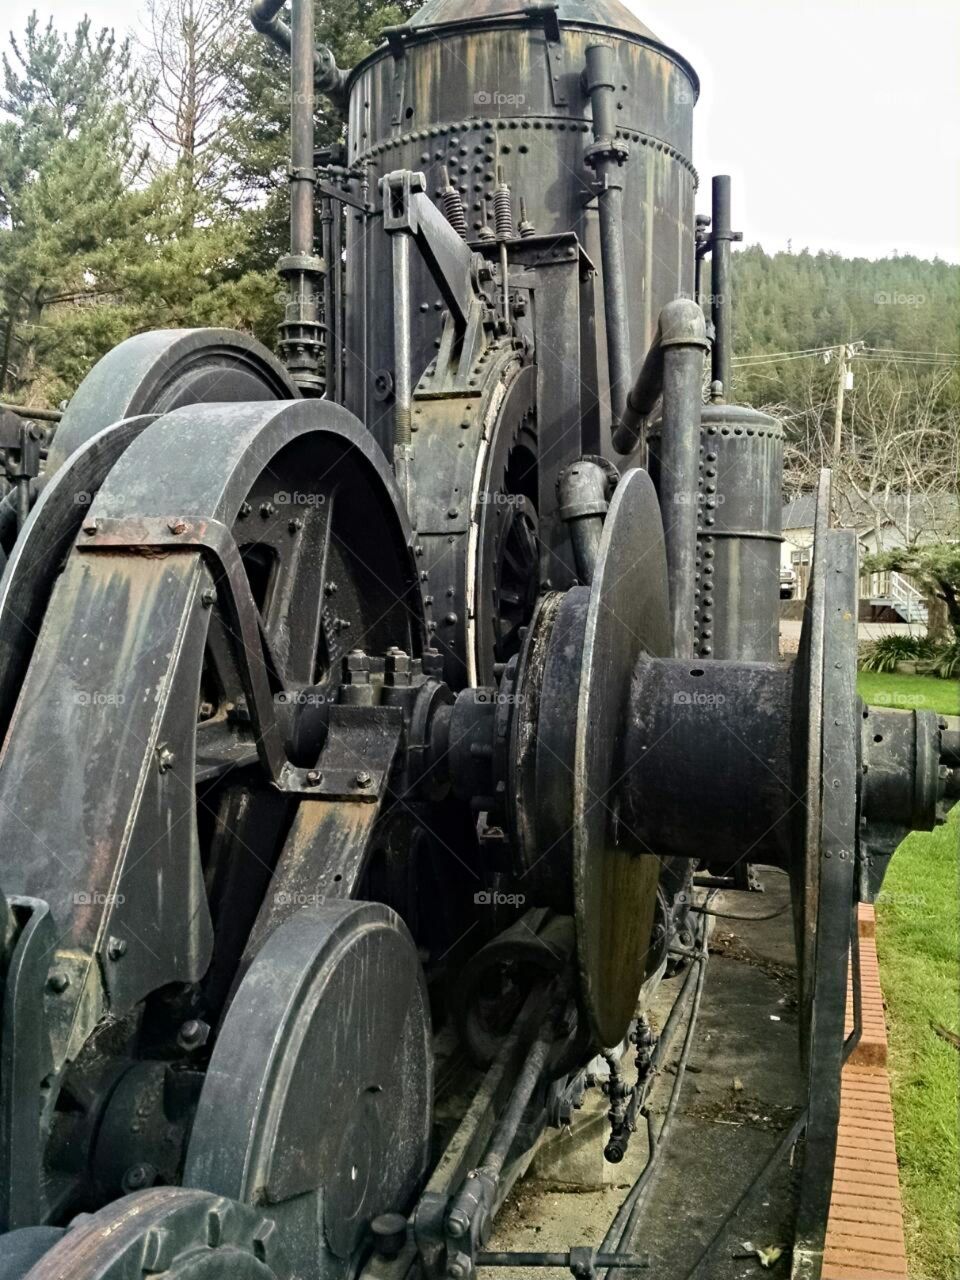 steam engine